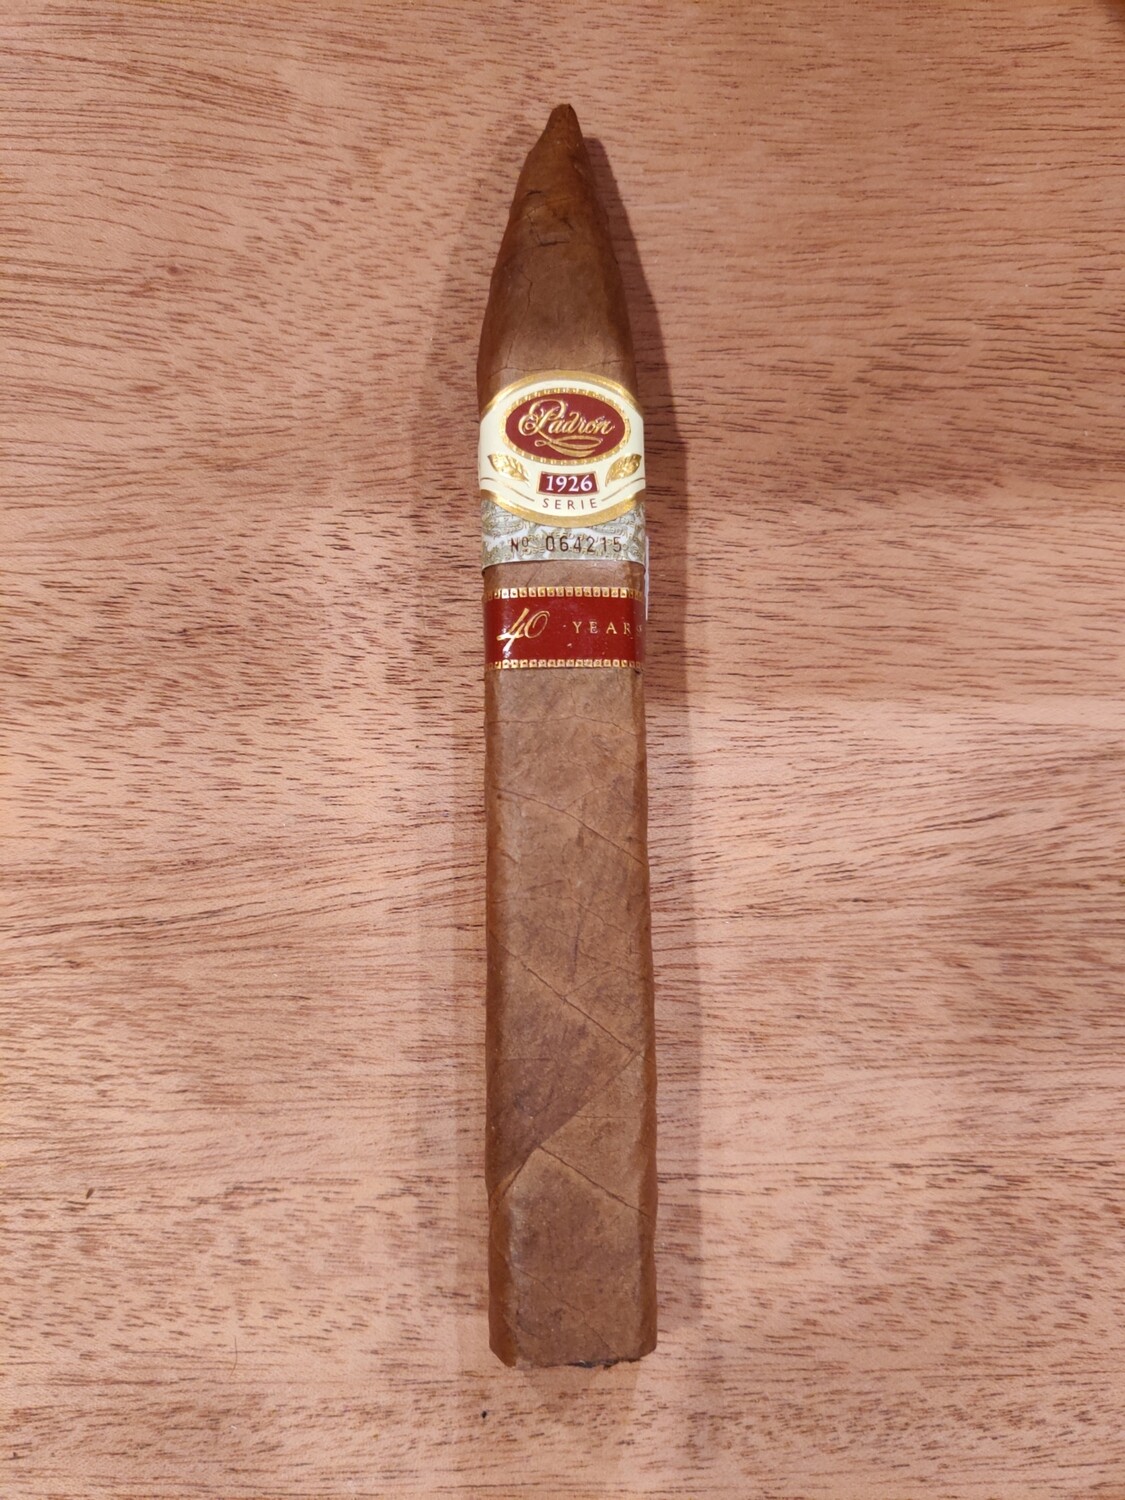 Padron 1926 40th Anniversary Natural Cigar